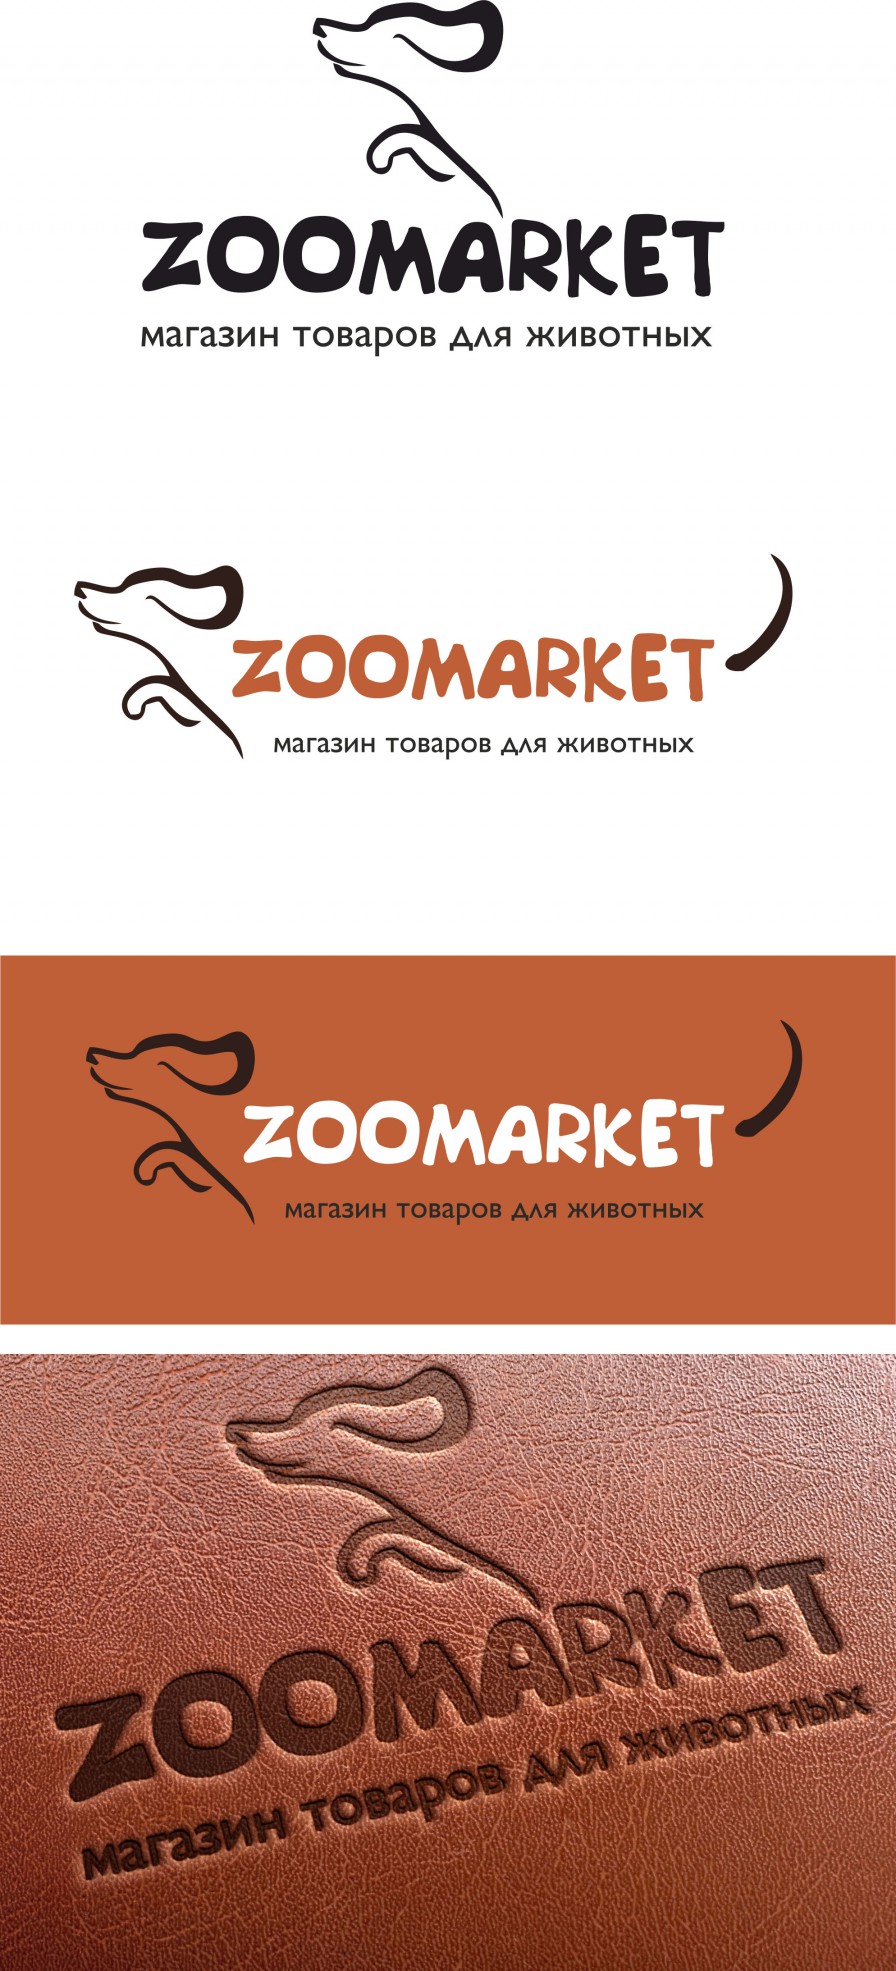 Логотип зоомагазин, ветеринарная клиника, товары для животных